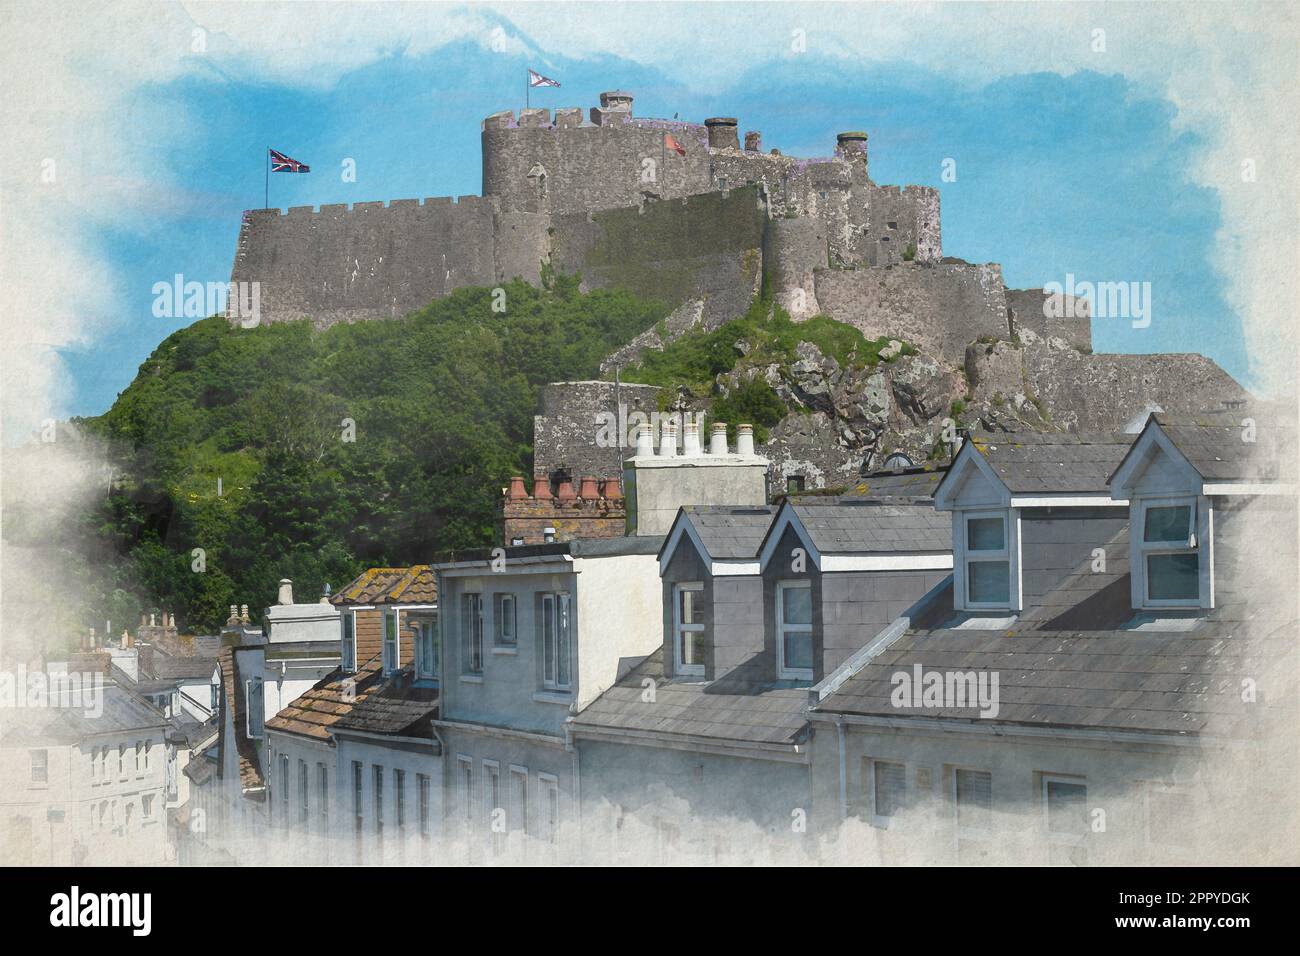 Un dipinto digitale acquerello dell'iconico Castello di Mont Orgueil. Porto di Gorey, Jersey, Isole del canale, Isole Britanniche. Foto Stock